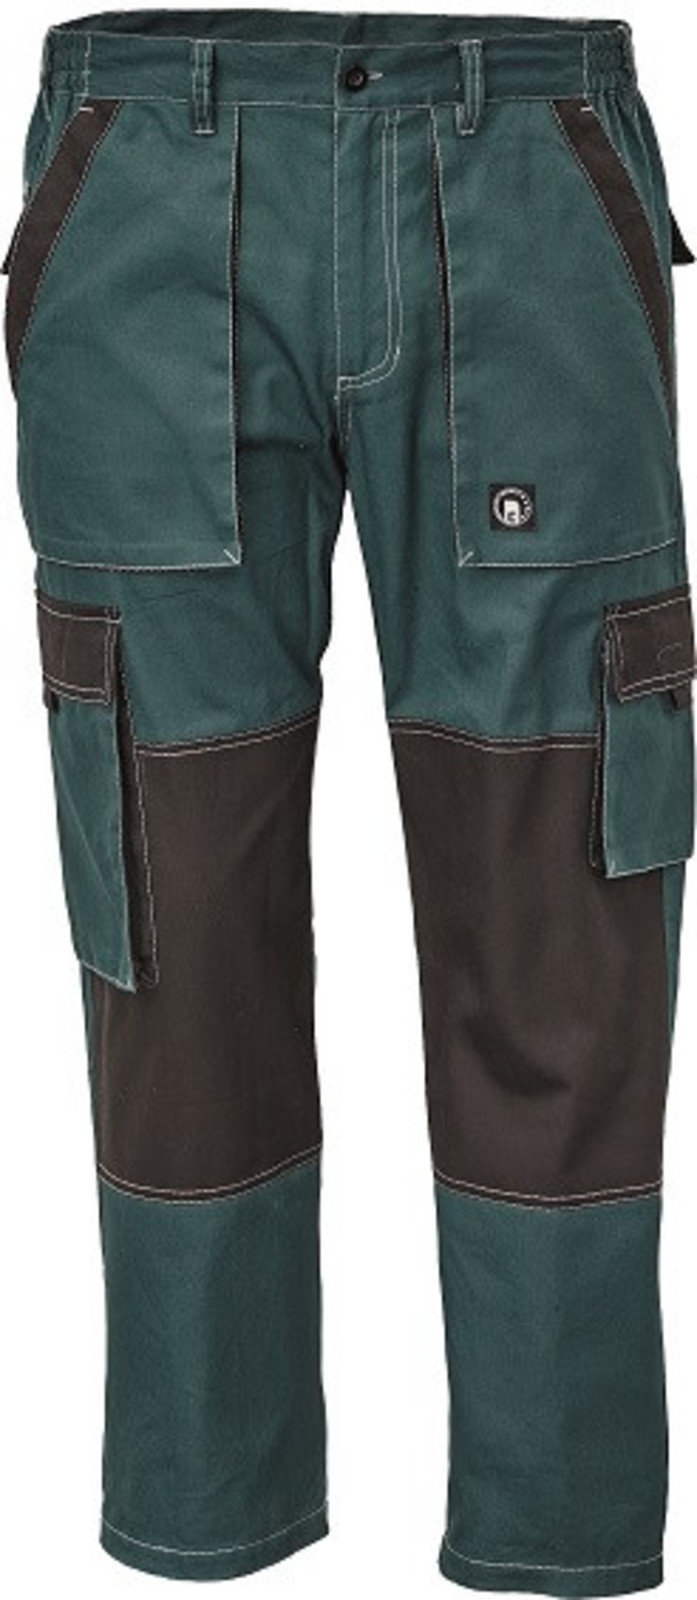 Tenšie bavlnené montérky Max Summer - veľkosť: 54, farba: zelená/čierna